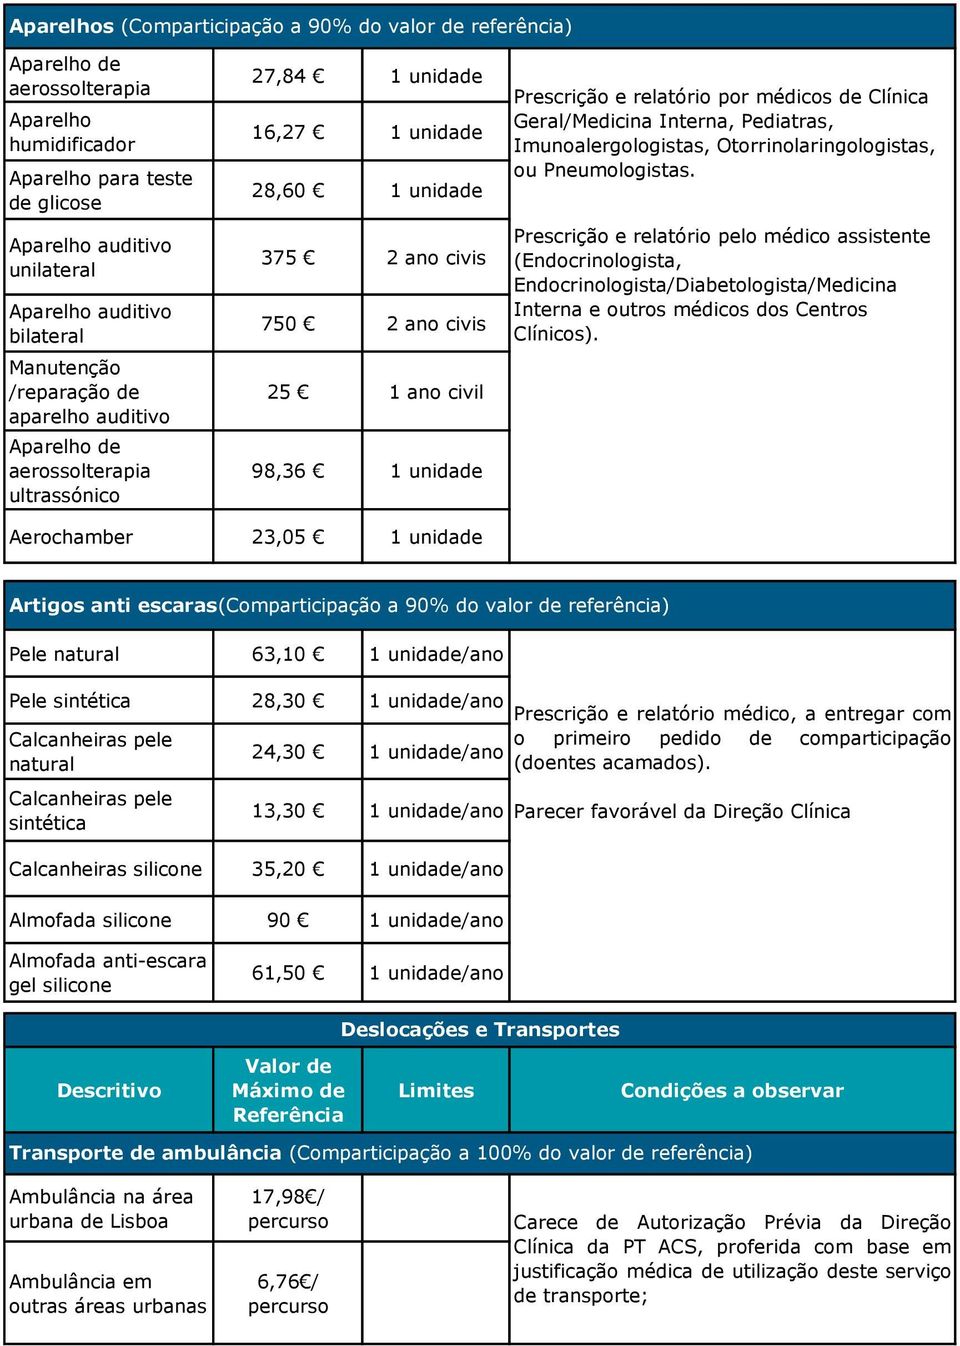 Prescrição e relatório por médicos de Clínica Geral/Medicina Interna, Pediatras, Imunoalergologistas, Otorrinolaringologistas, ou Pneumologistas.